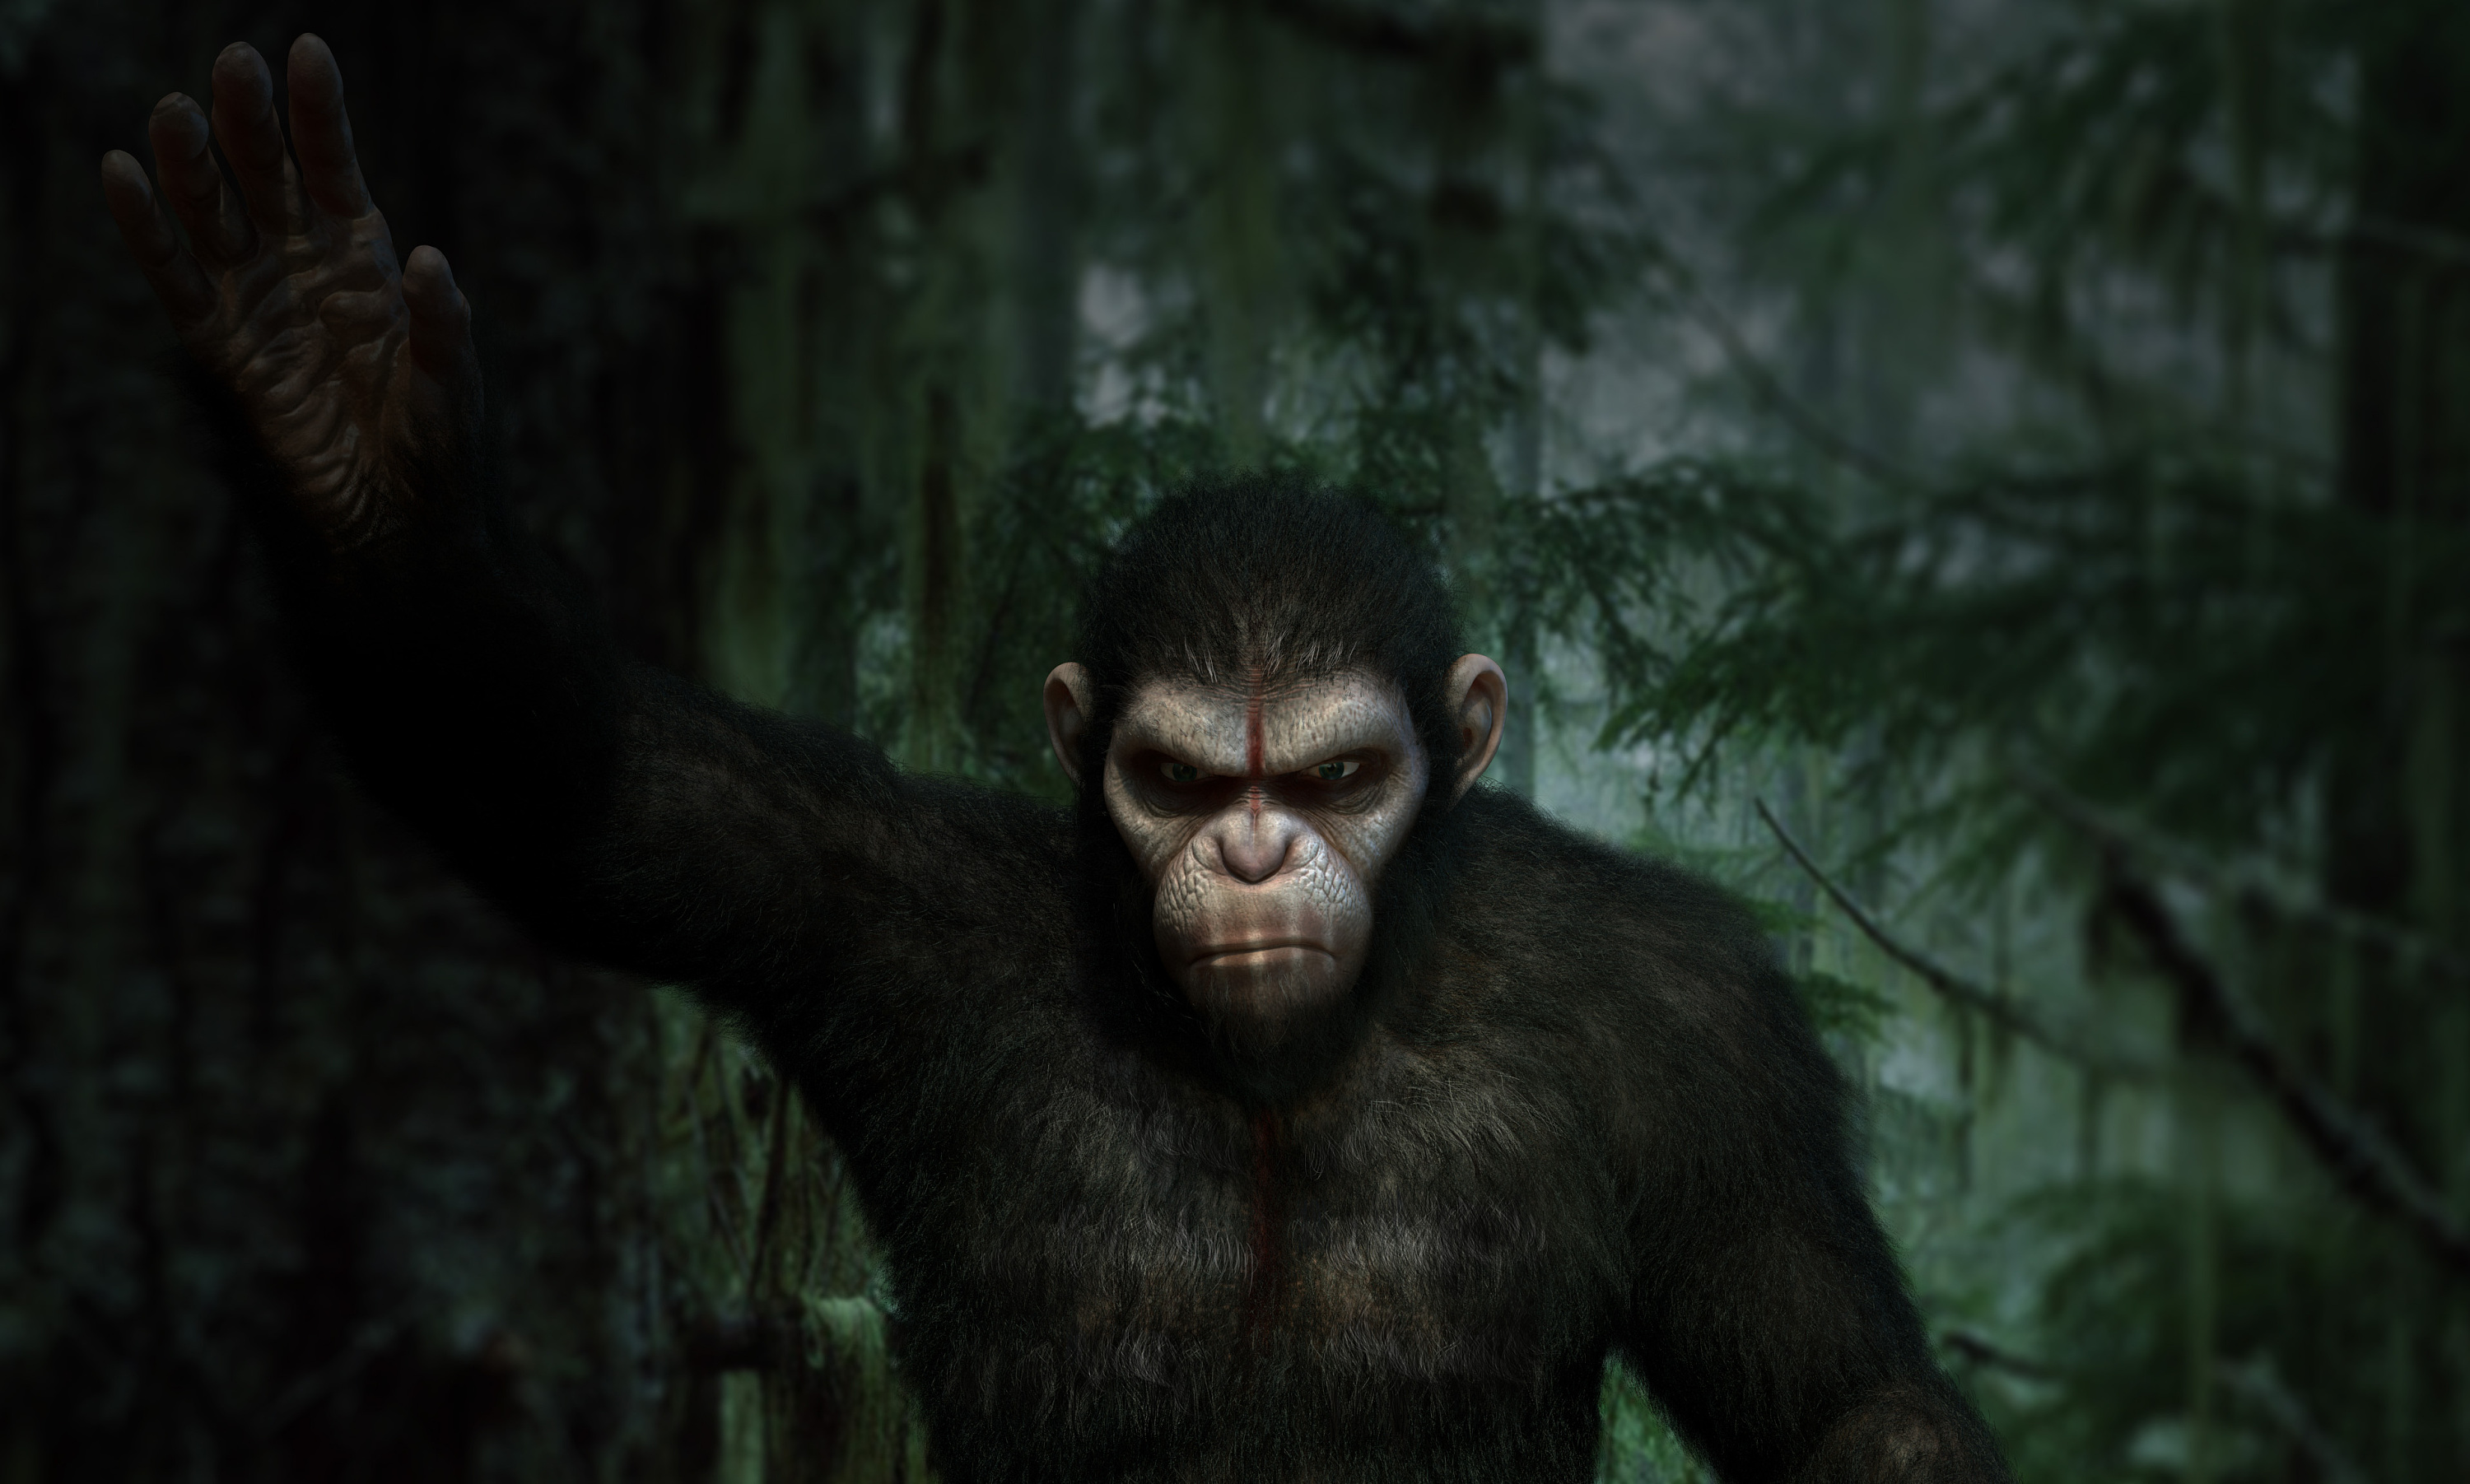 《猩球崛起3》发领袖凯撒预告 凯撒蜕变迎战_央广网